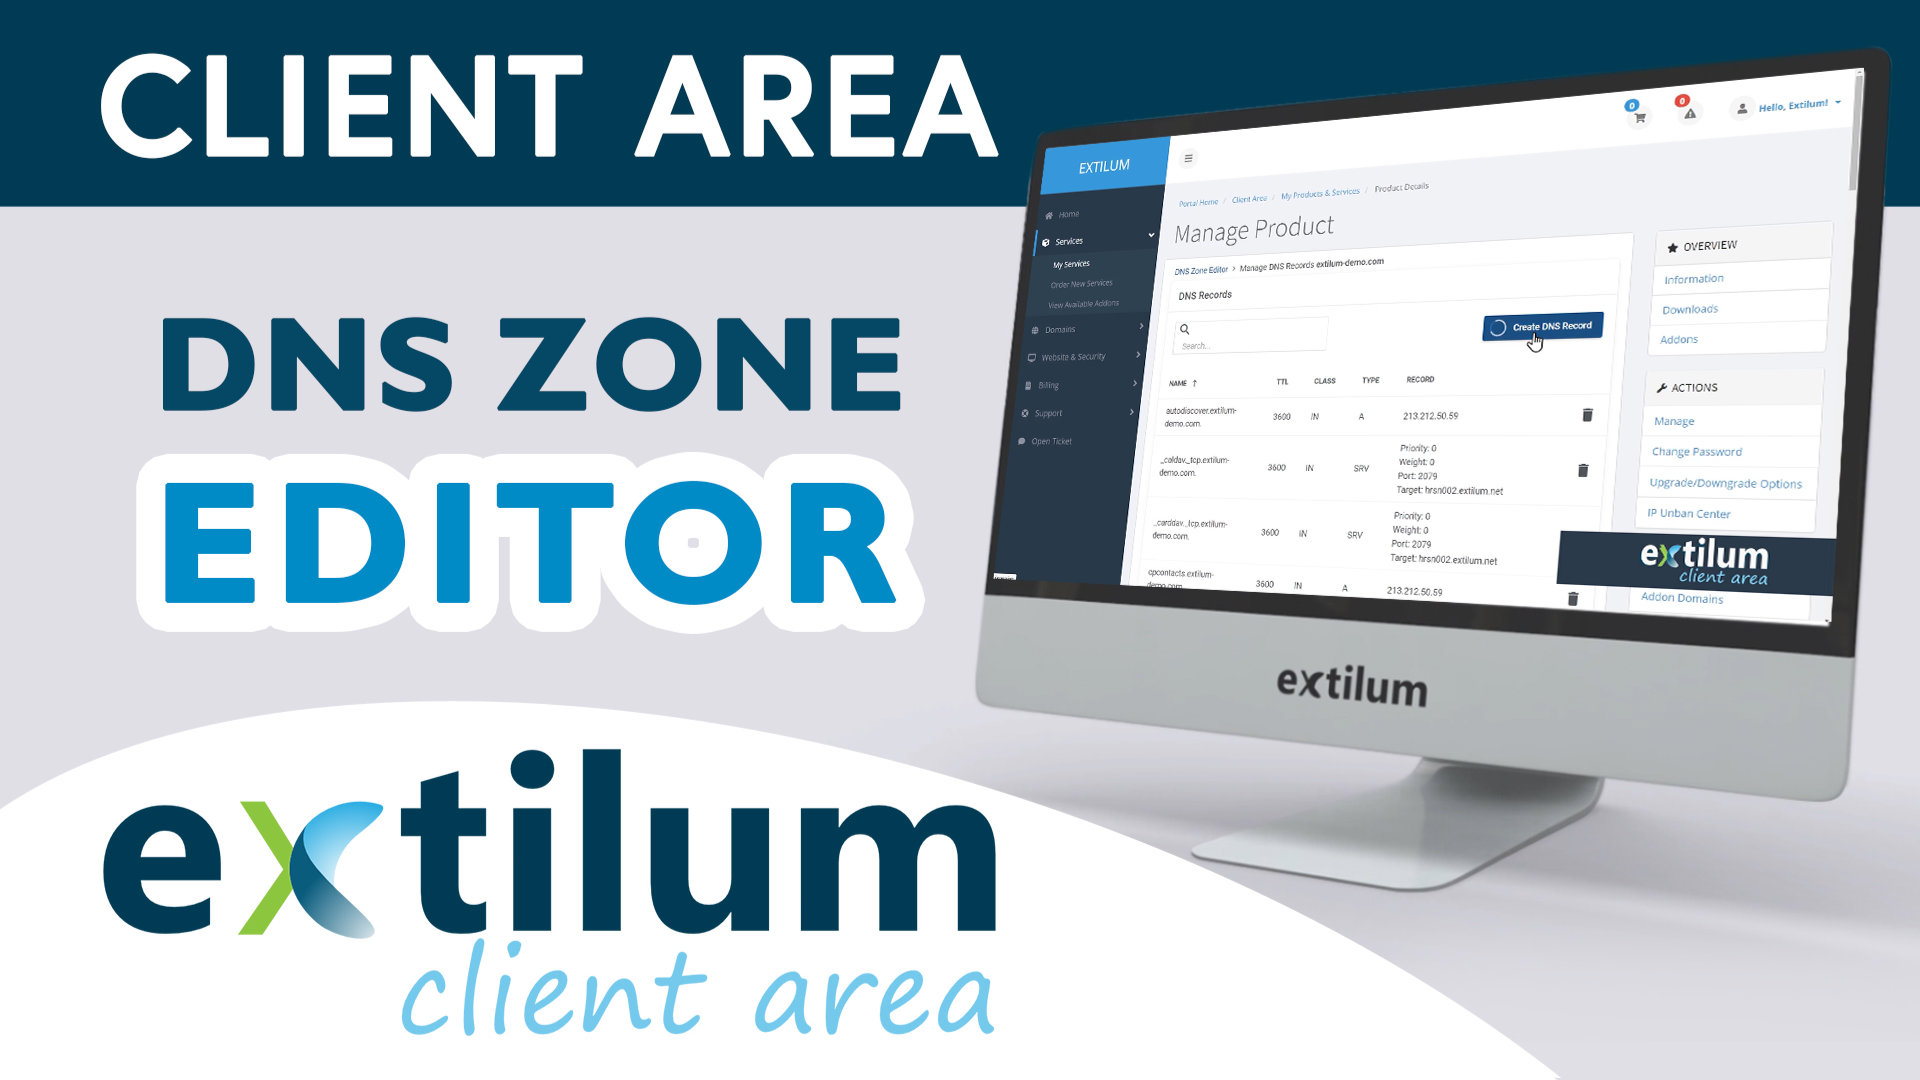 Extilum Client Area - DNS Zone Editor